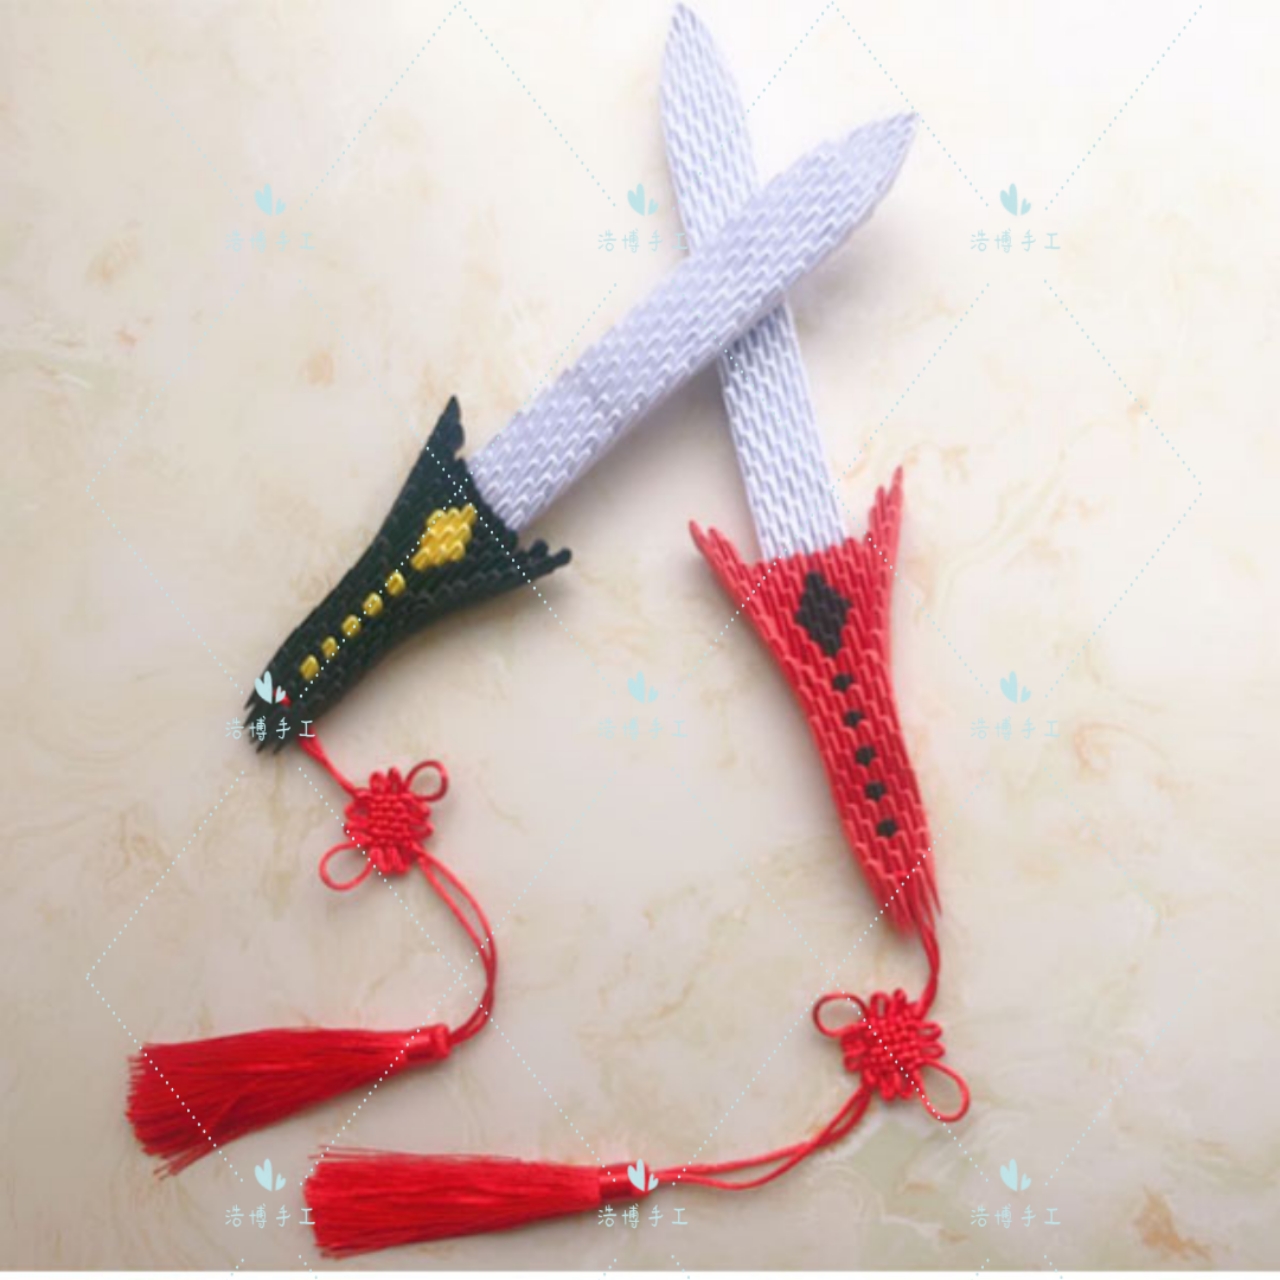 浩博尚方宝剑三角插折纸DIY生日 礼物手工 礼品 材料包半成品可选